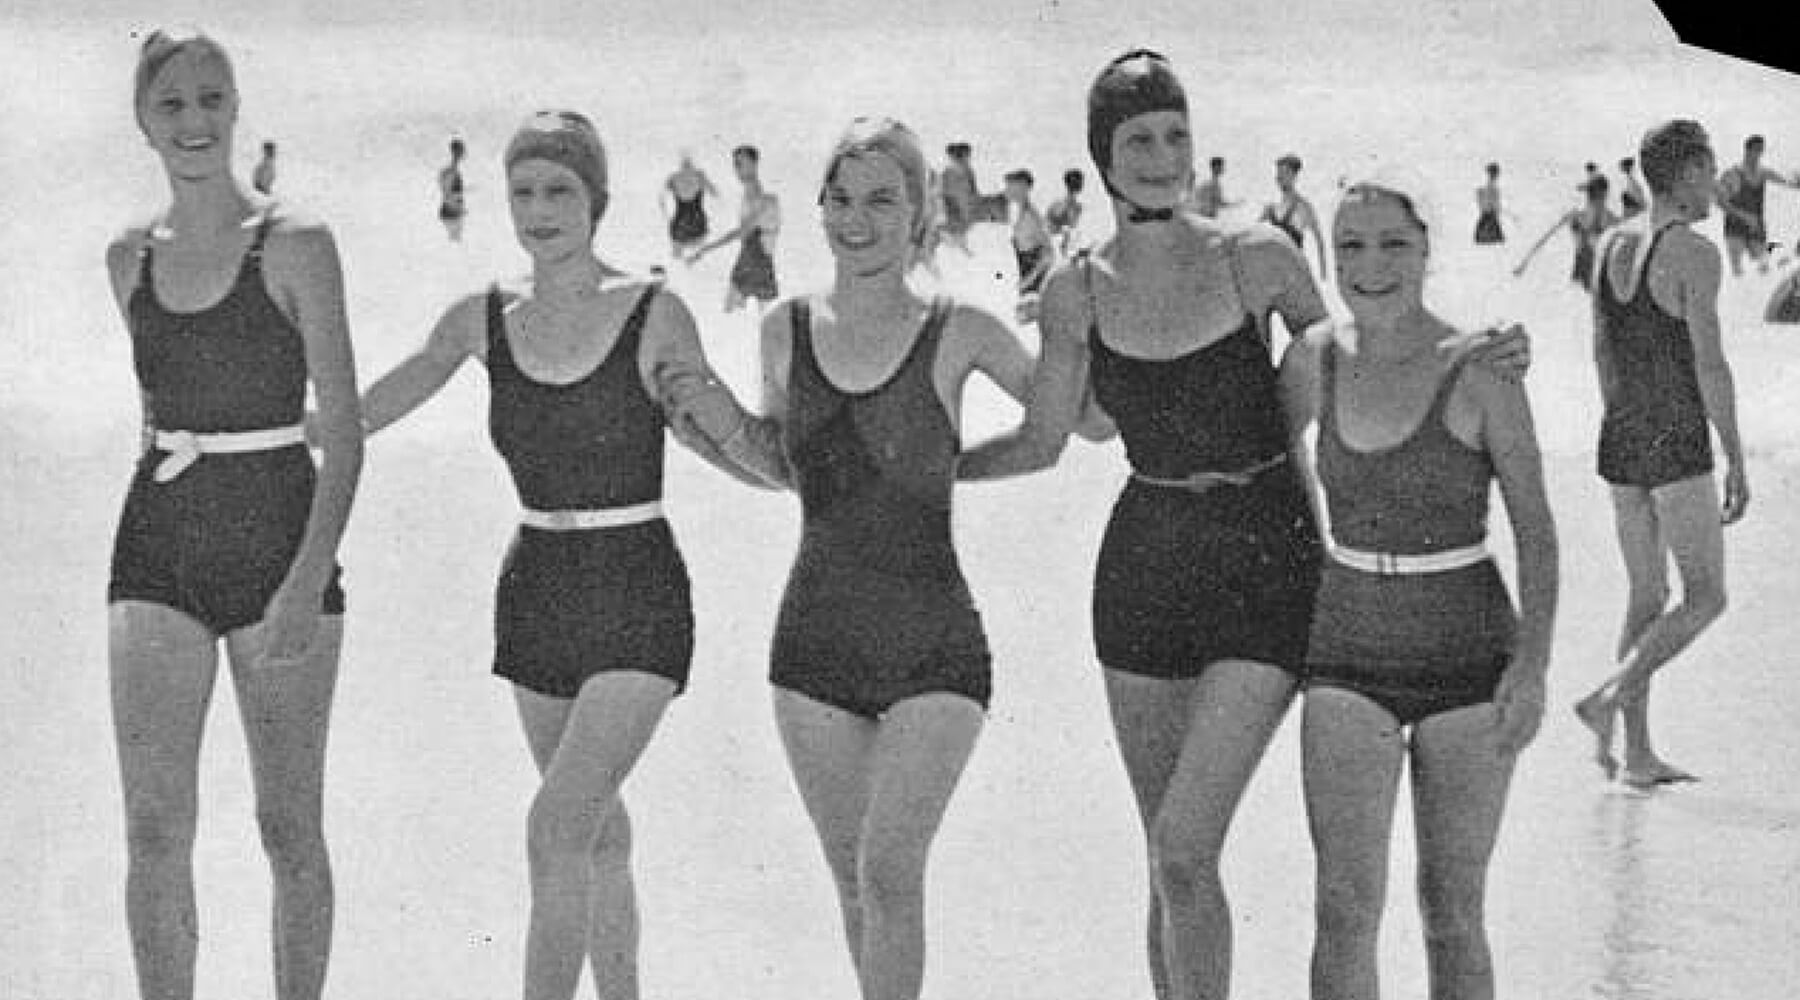 Women's Swimwear in the 1930s and 1940s